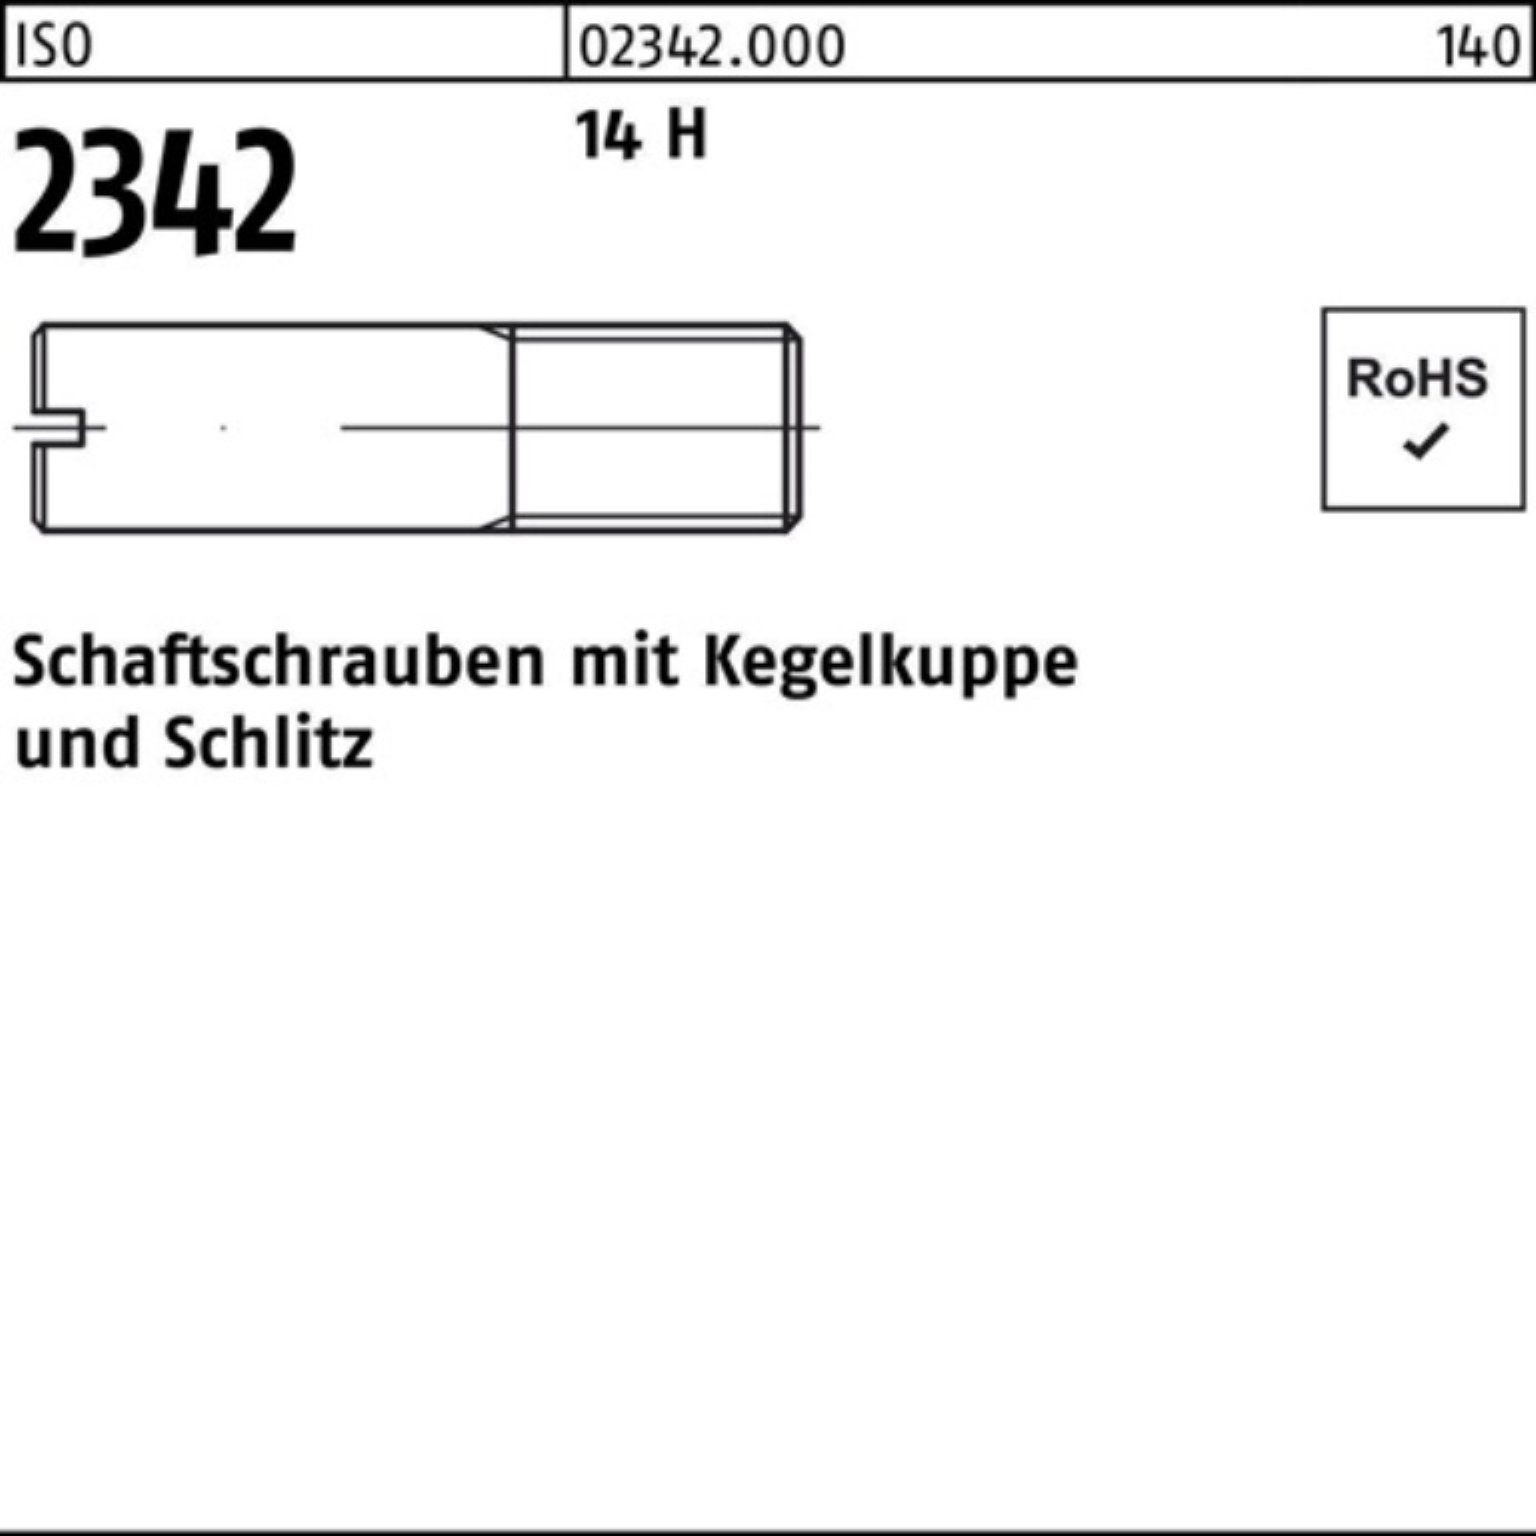 Reyher Schraube 100er Pack Schaftschraube ISO 2342 Kegelkuppe/Schlitz M5x 35 14 H 100